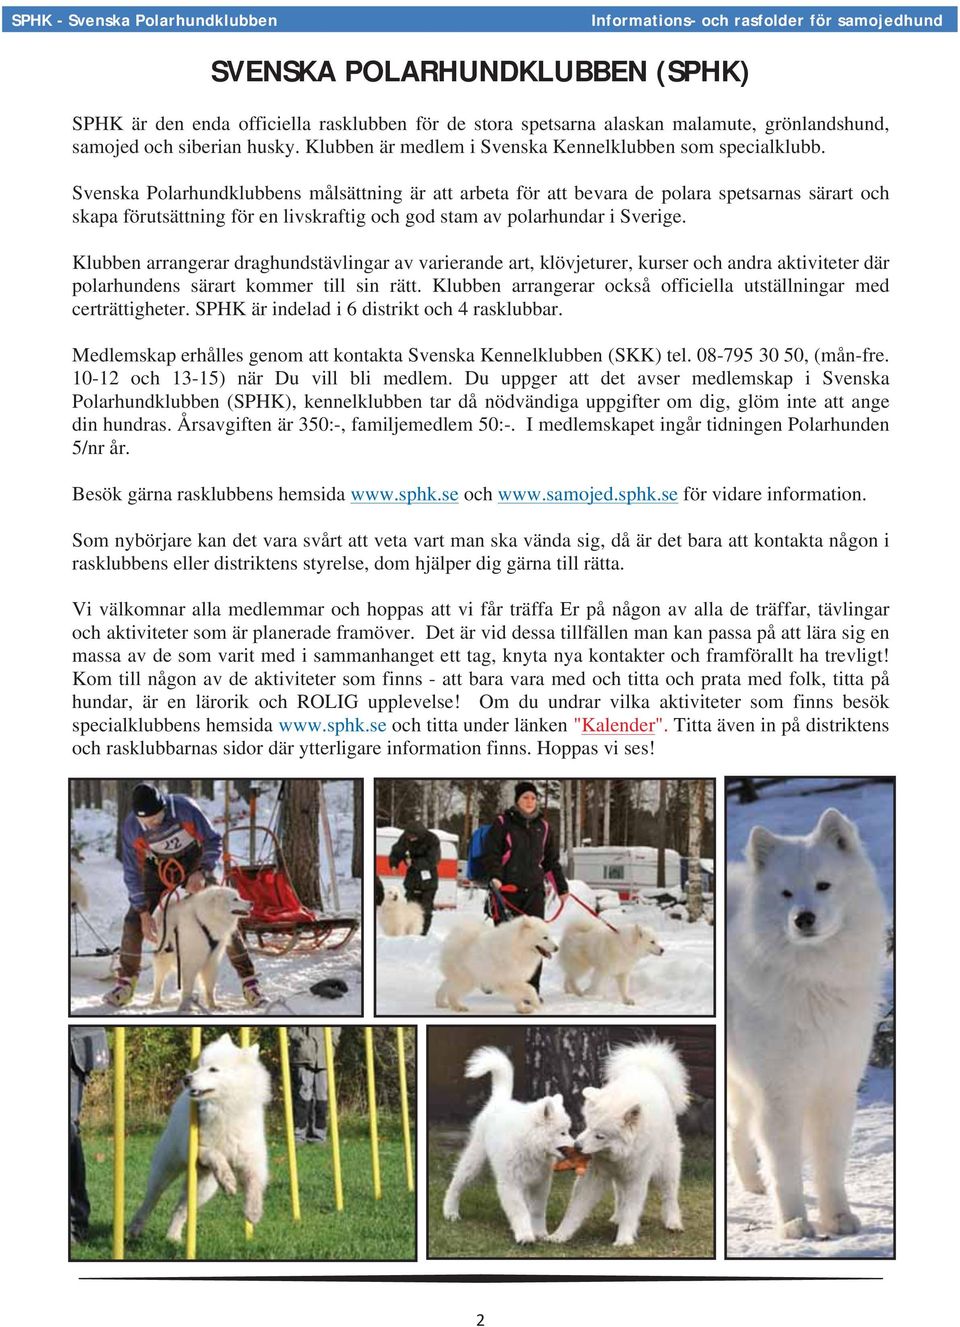 Svenska Polarhundklubbens målsättning är att arbeta för att bevara de polara spetsarnas särart och skapa förutsättning för en livskraftig och god stam av polarhundar i Sverige.